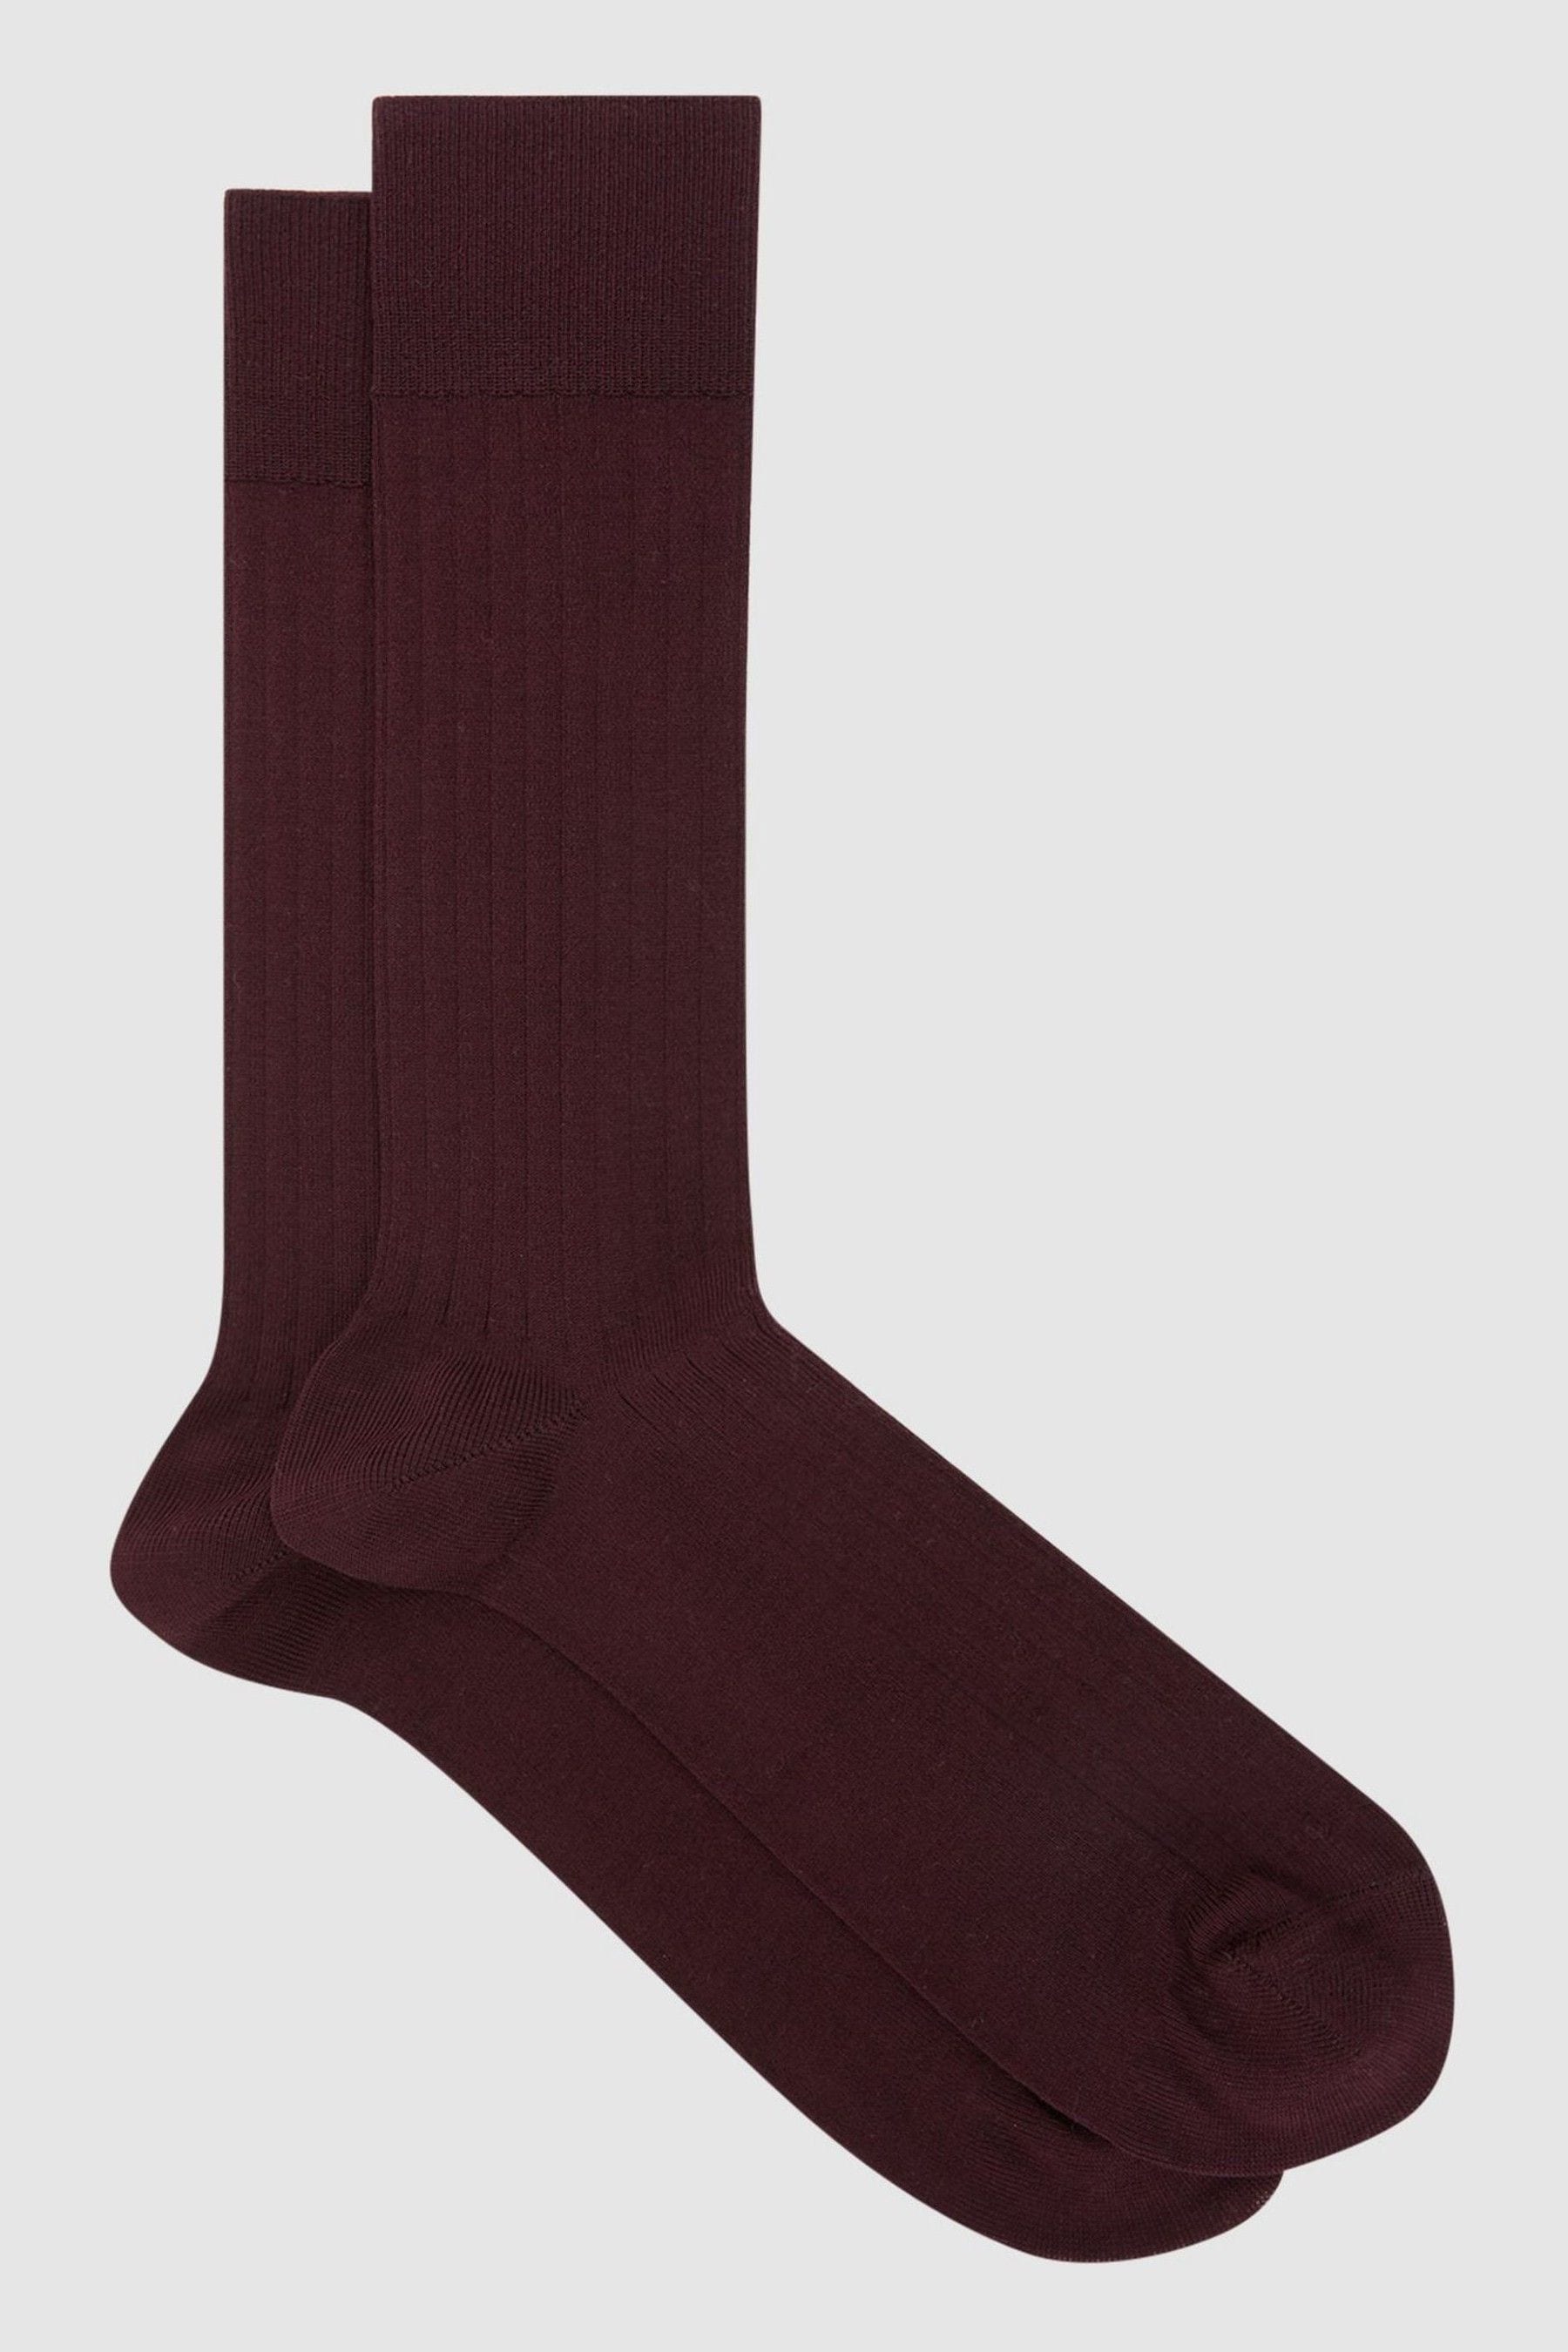 Fela - Bordeaux Ribbed Socks